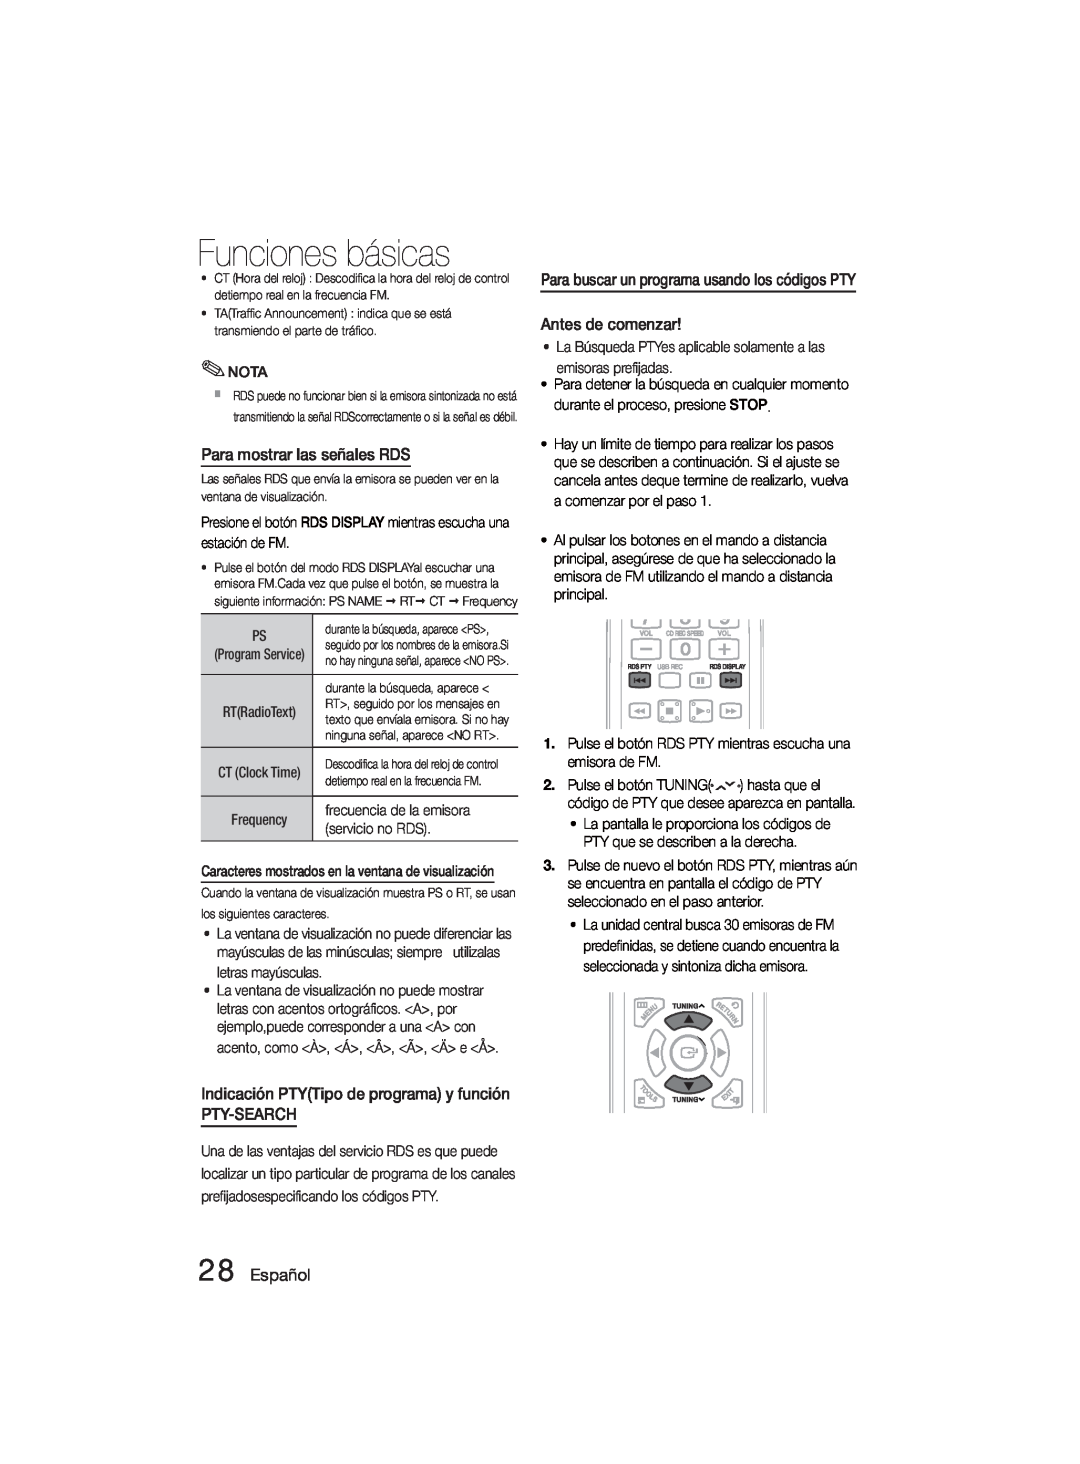 Samsung MM-D330D/ZF manual Para mostrar las señales RDS, Pty-Search, Español, Funciones básicas 